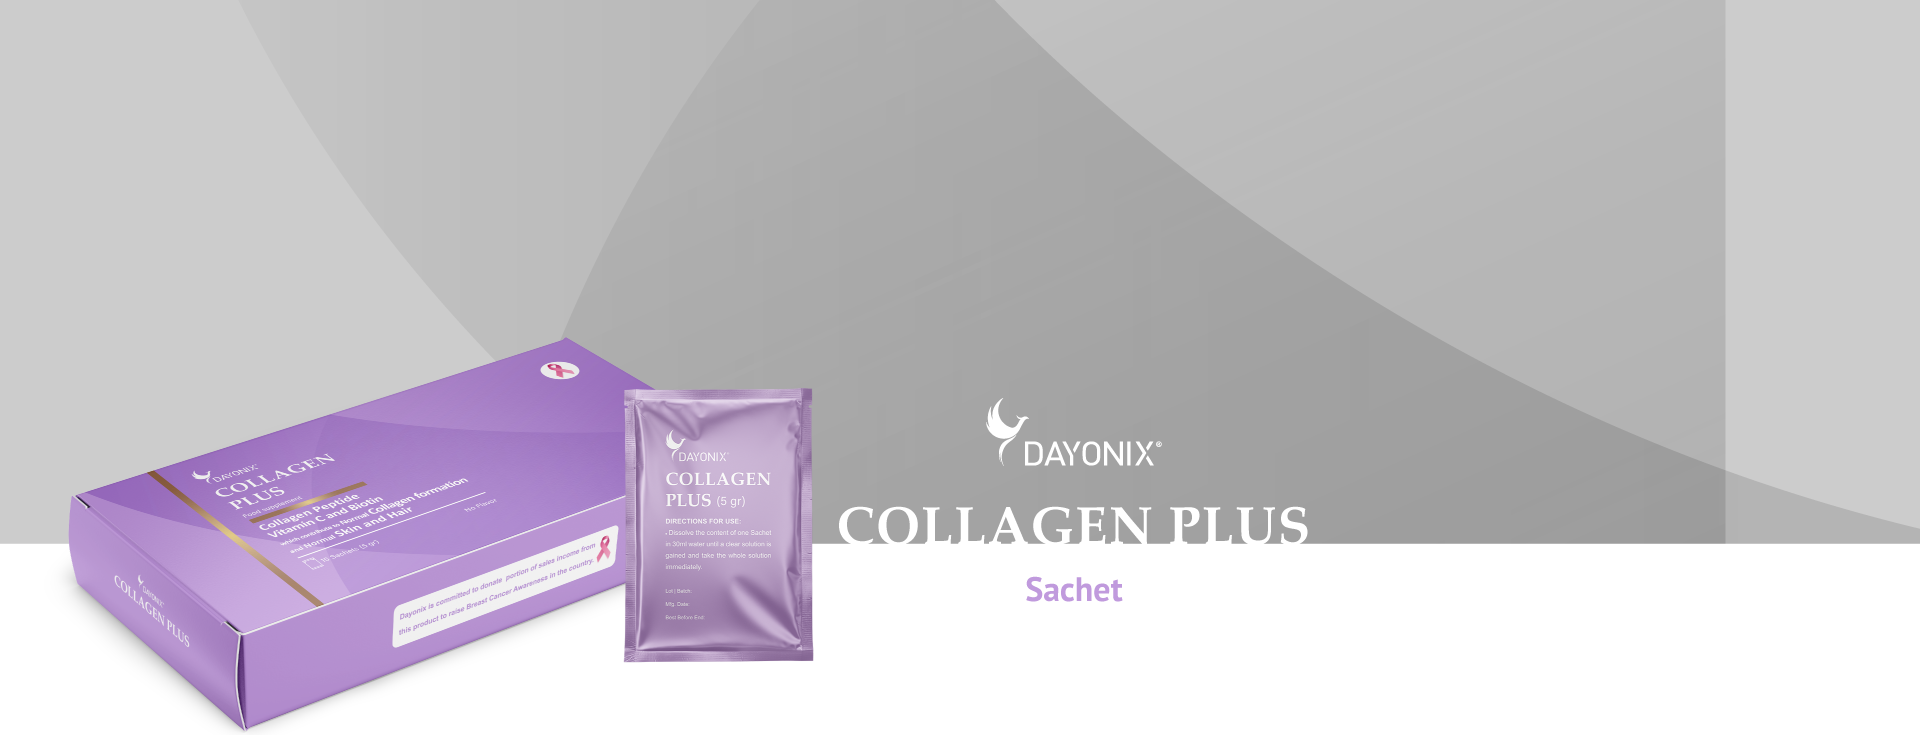 Collagen-Plus